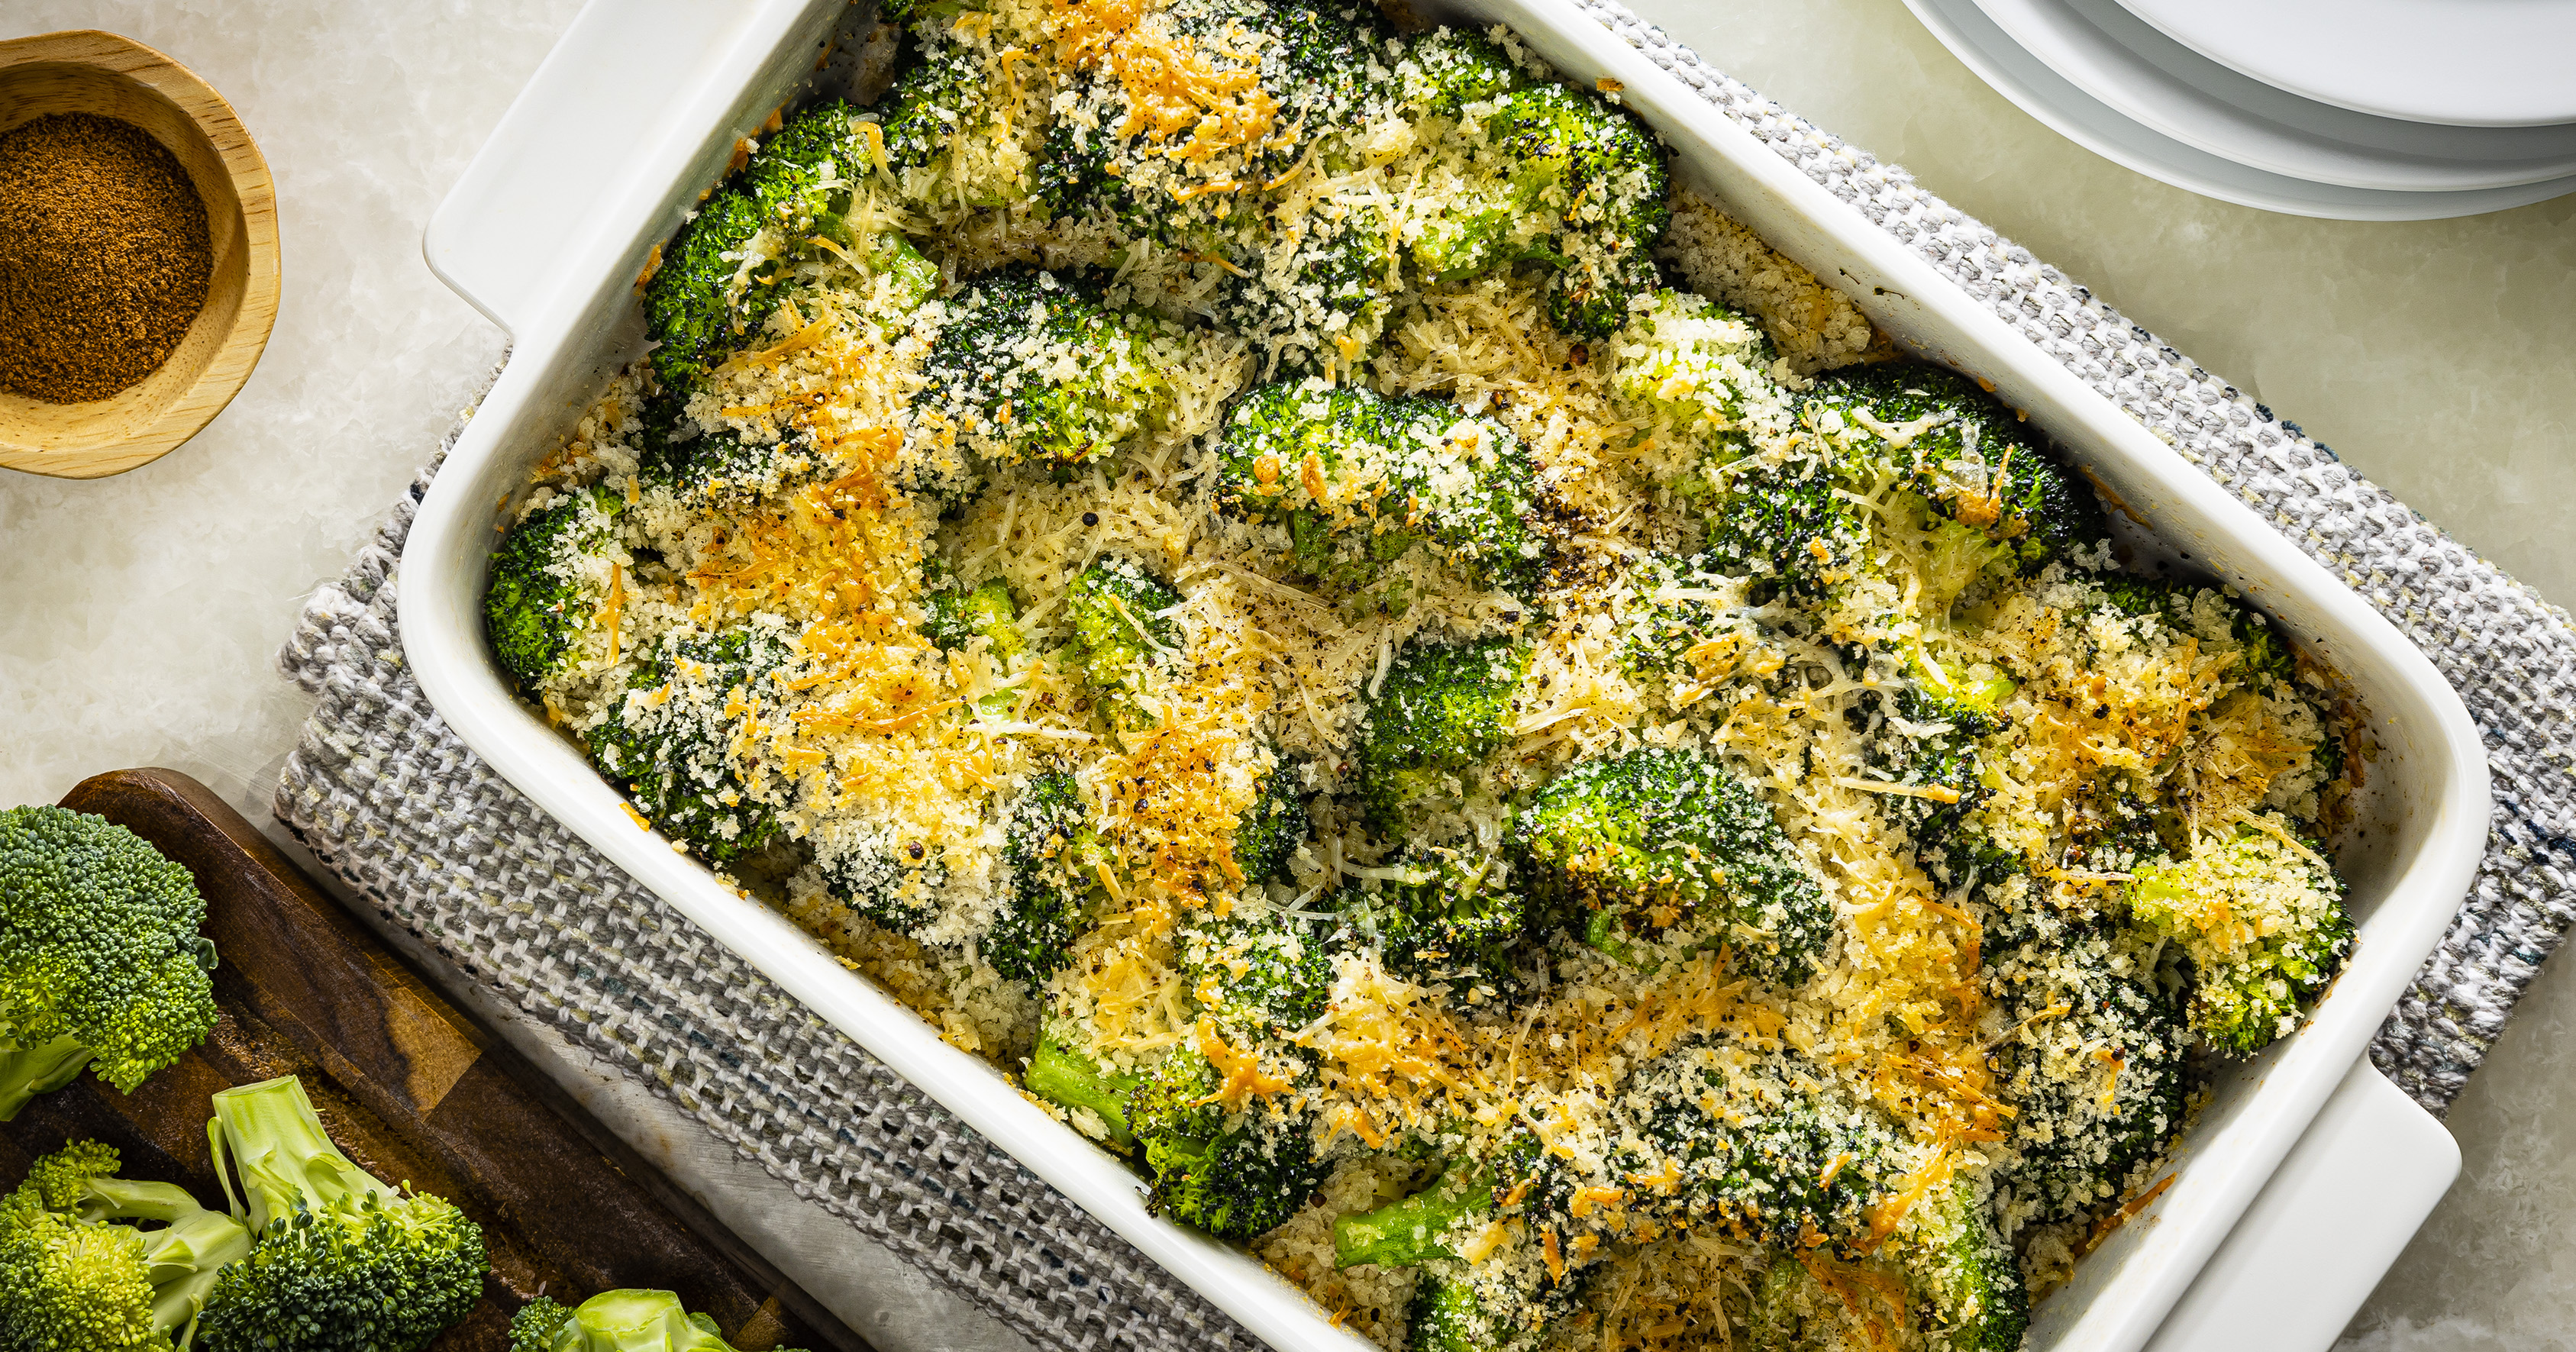 Broccoli and Parmesan Gratin